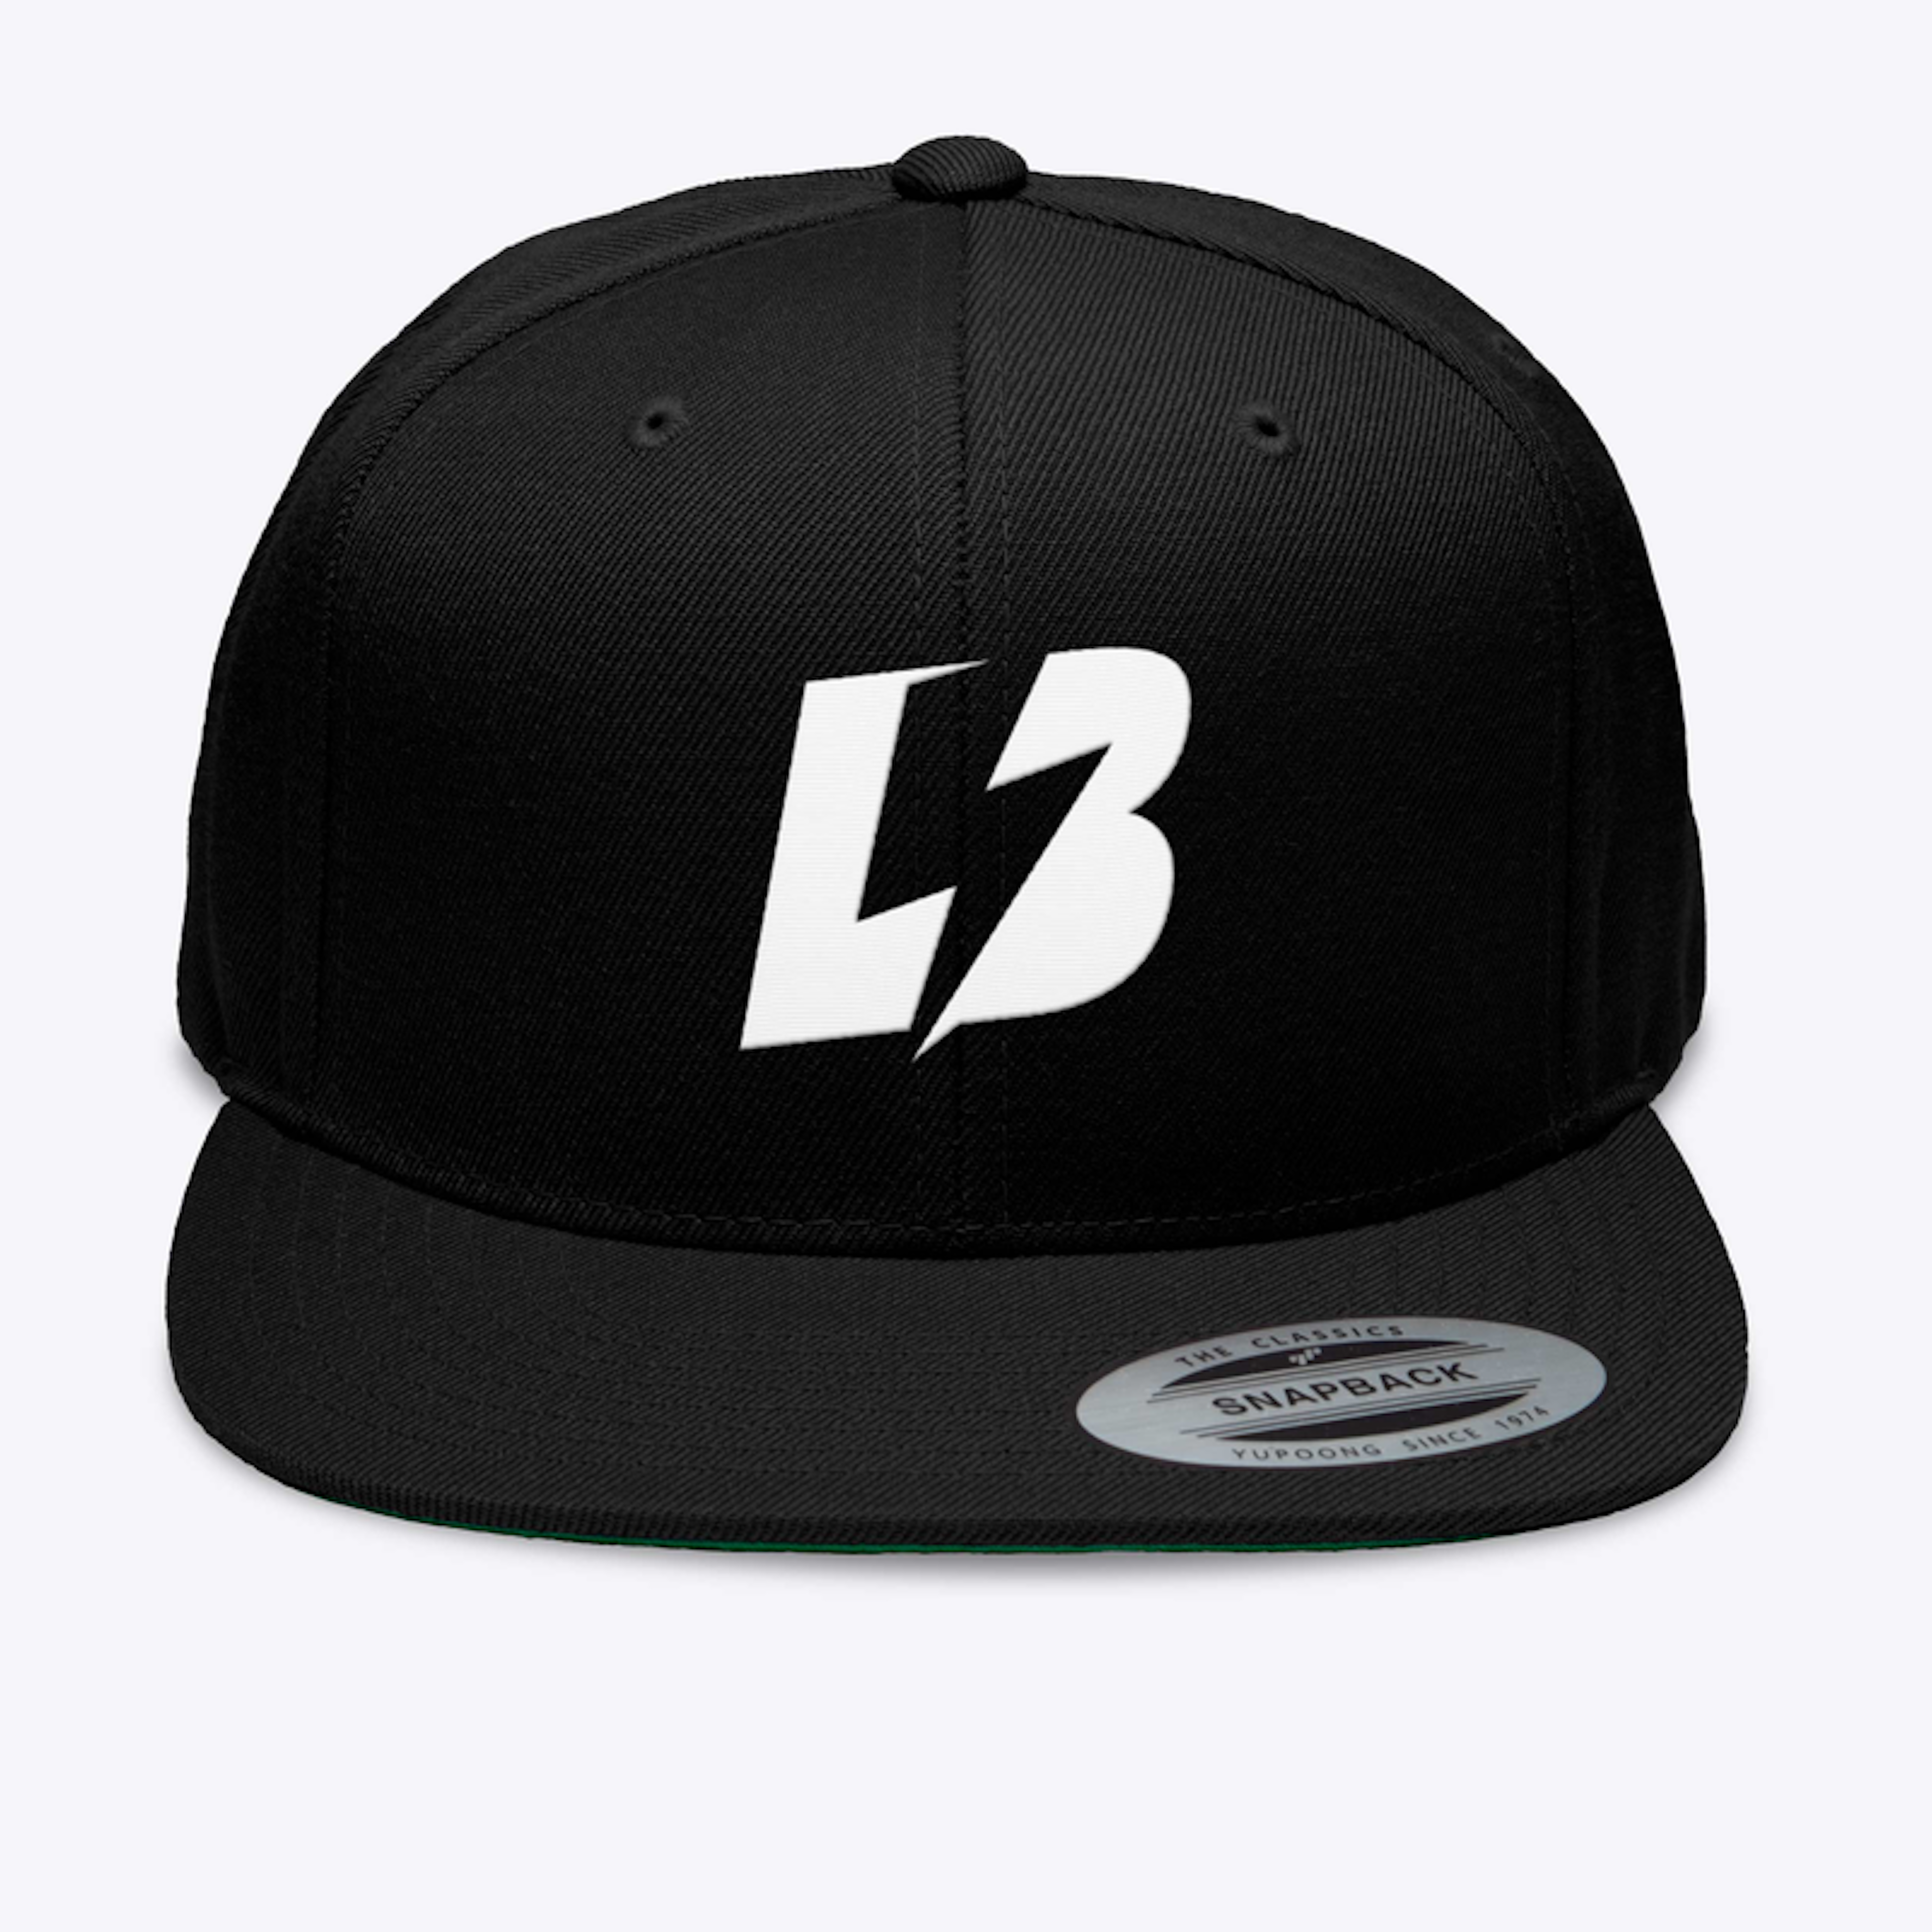 LaserBolt Snapback Black Hat